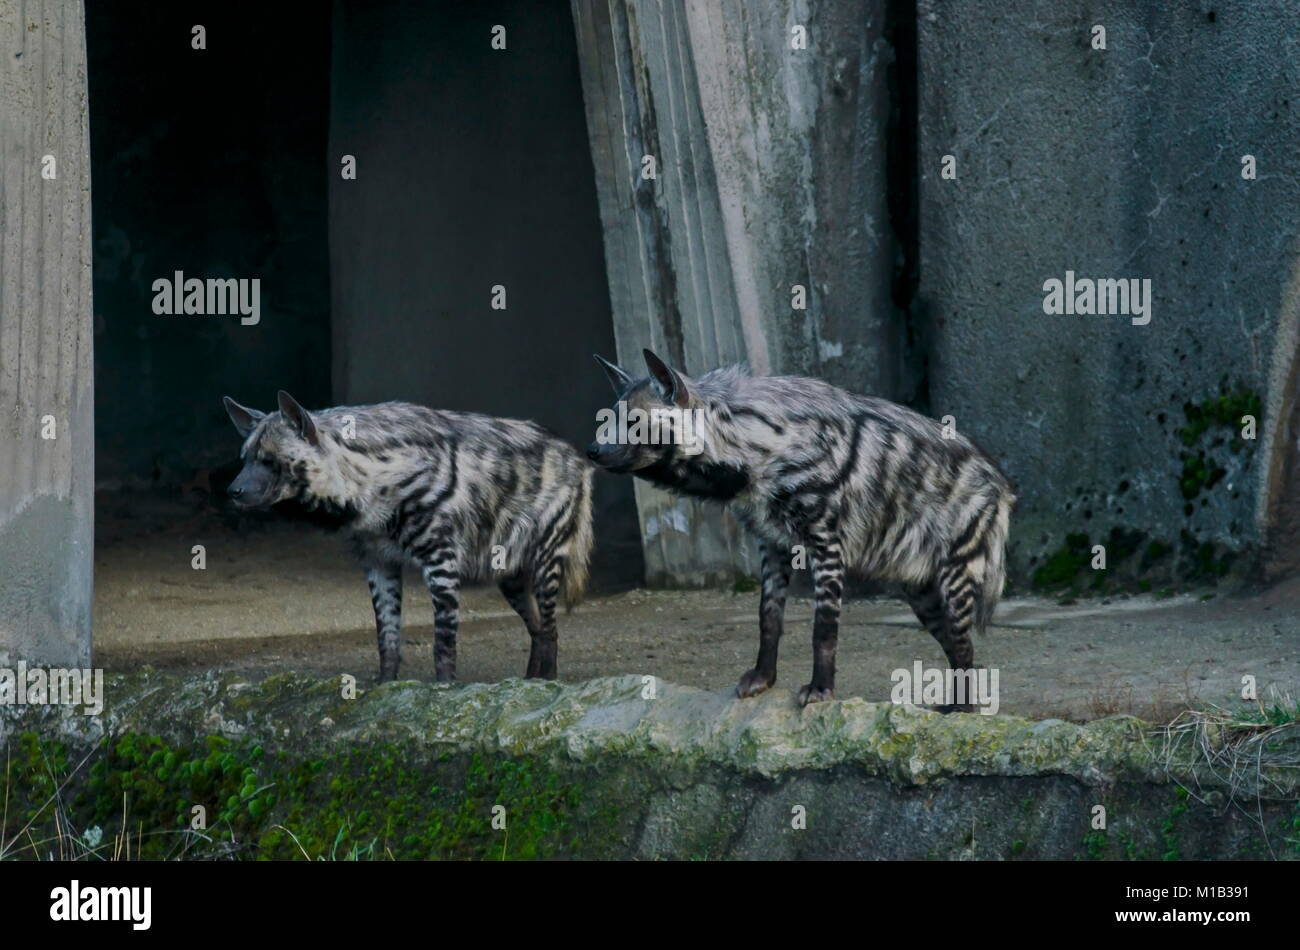 Two Striped hyenas look aggressively, Sofia, Bulgaria Stock Photo